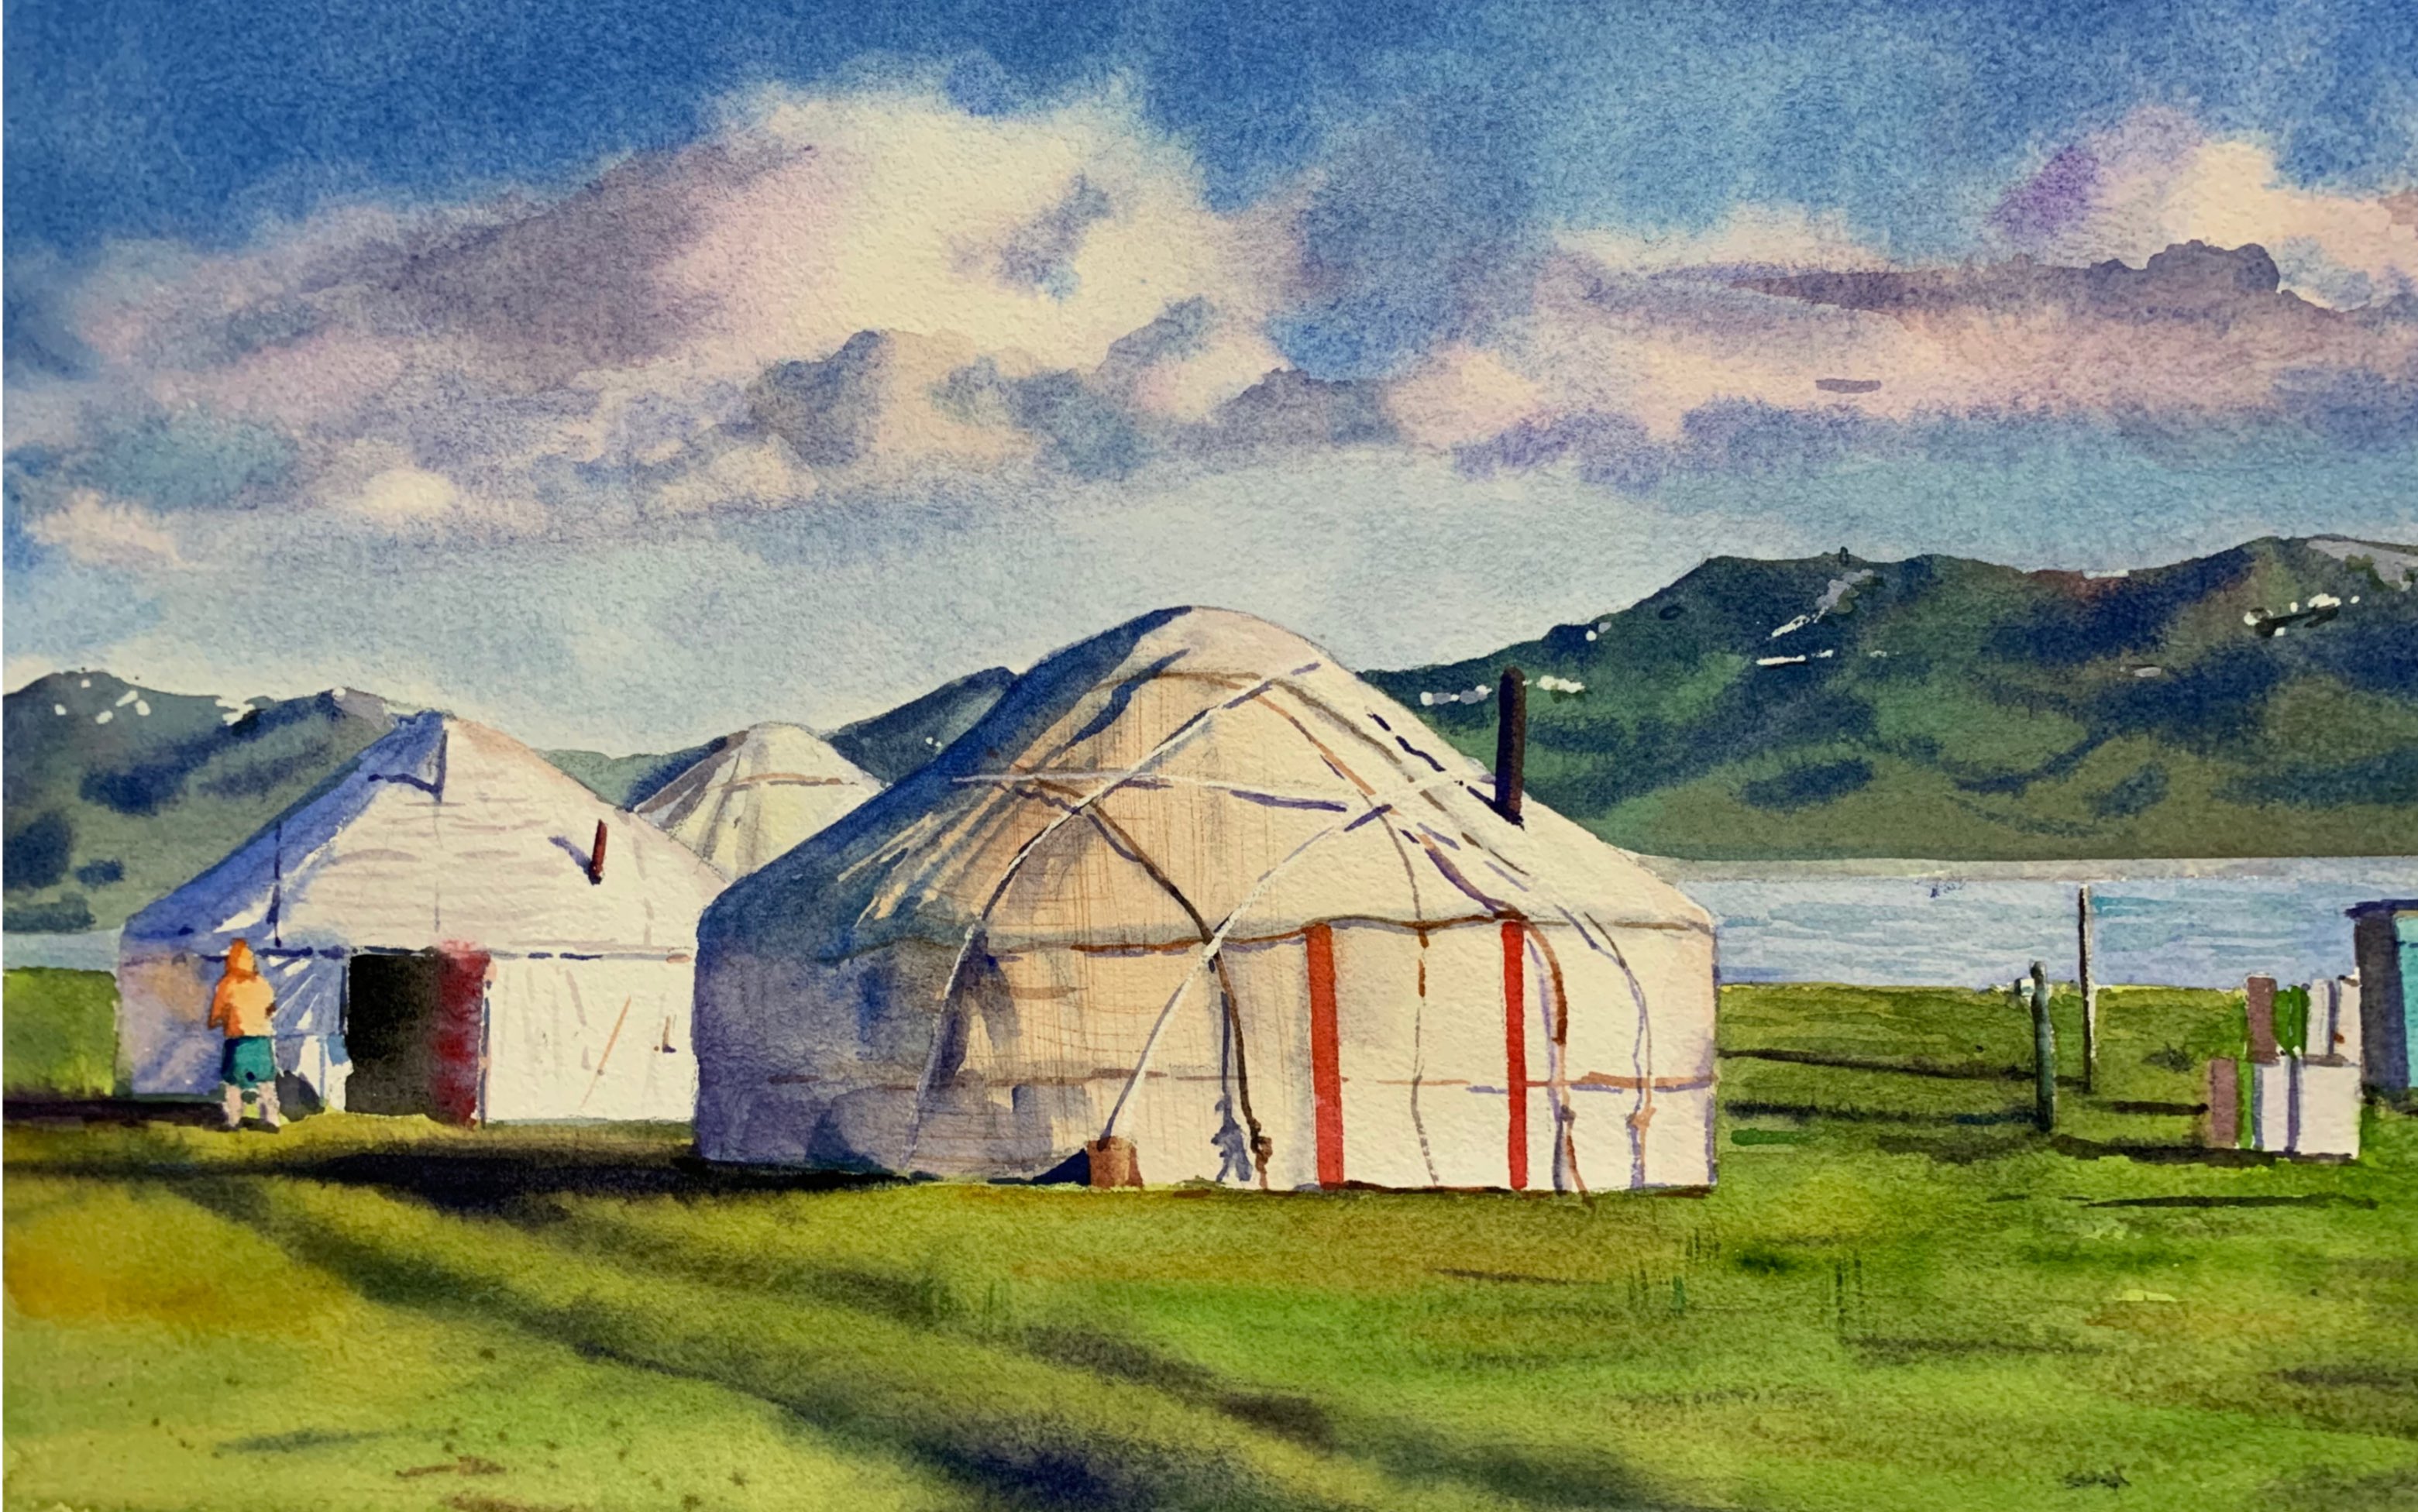 蒙古包风景图画图片